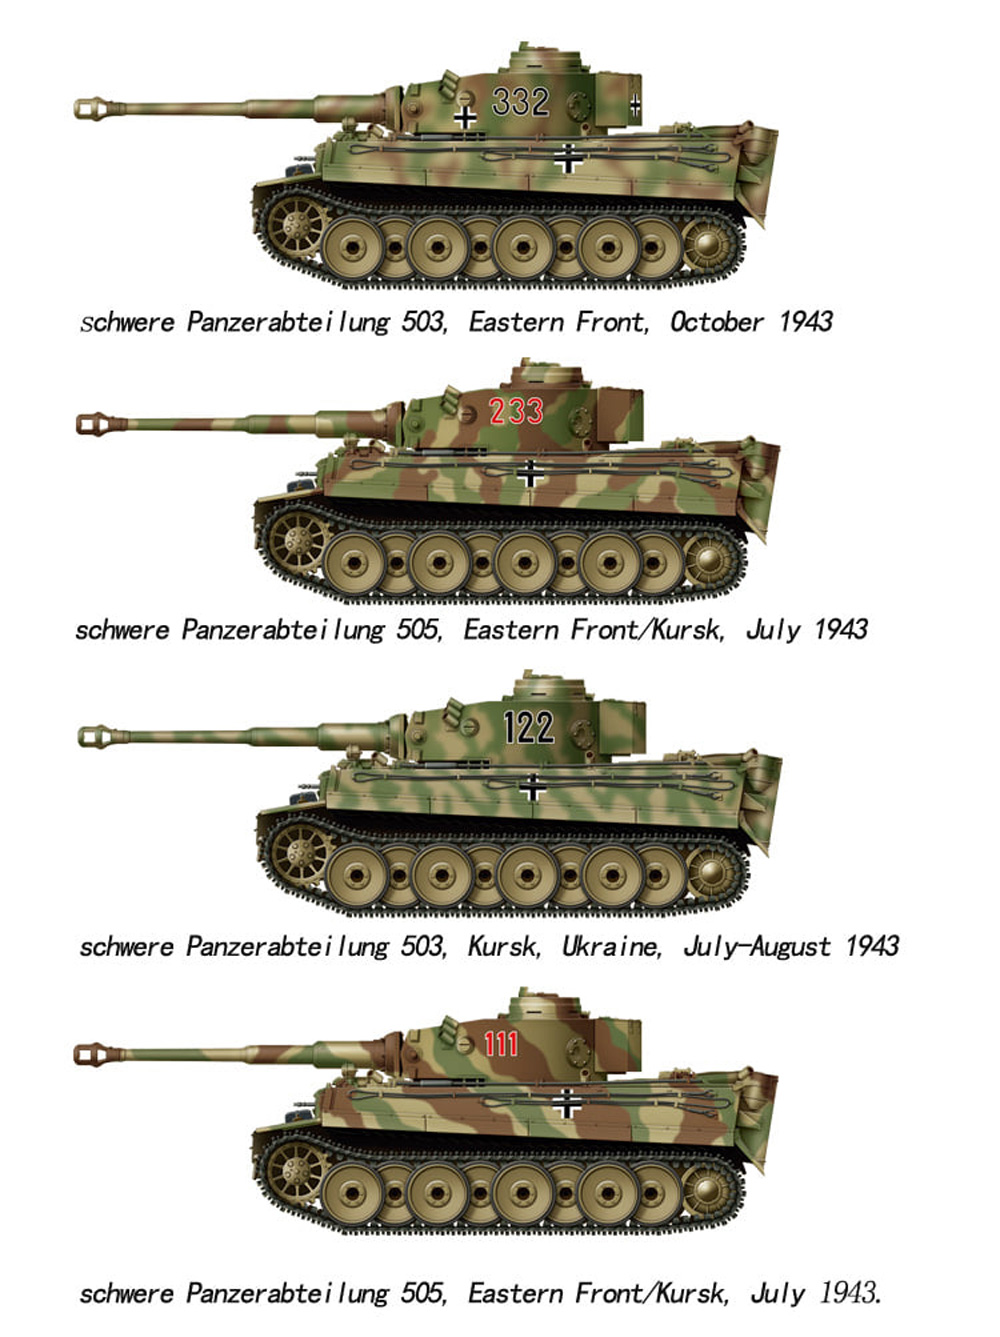 タイガー 1 初期型 w/フルインテリア クルスクの戦い プラモデル (タコム 1/48 ミリタリー No.USNO-006) 商品画像_2